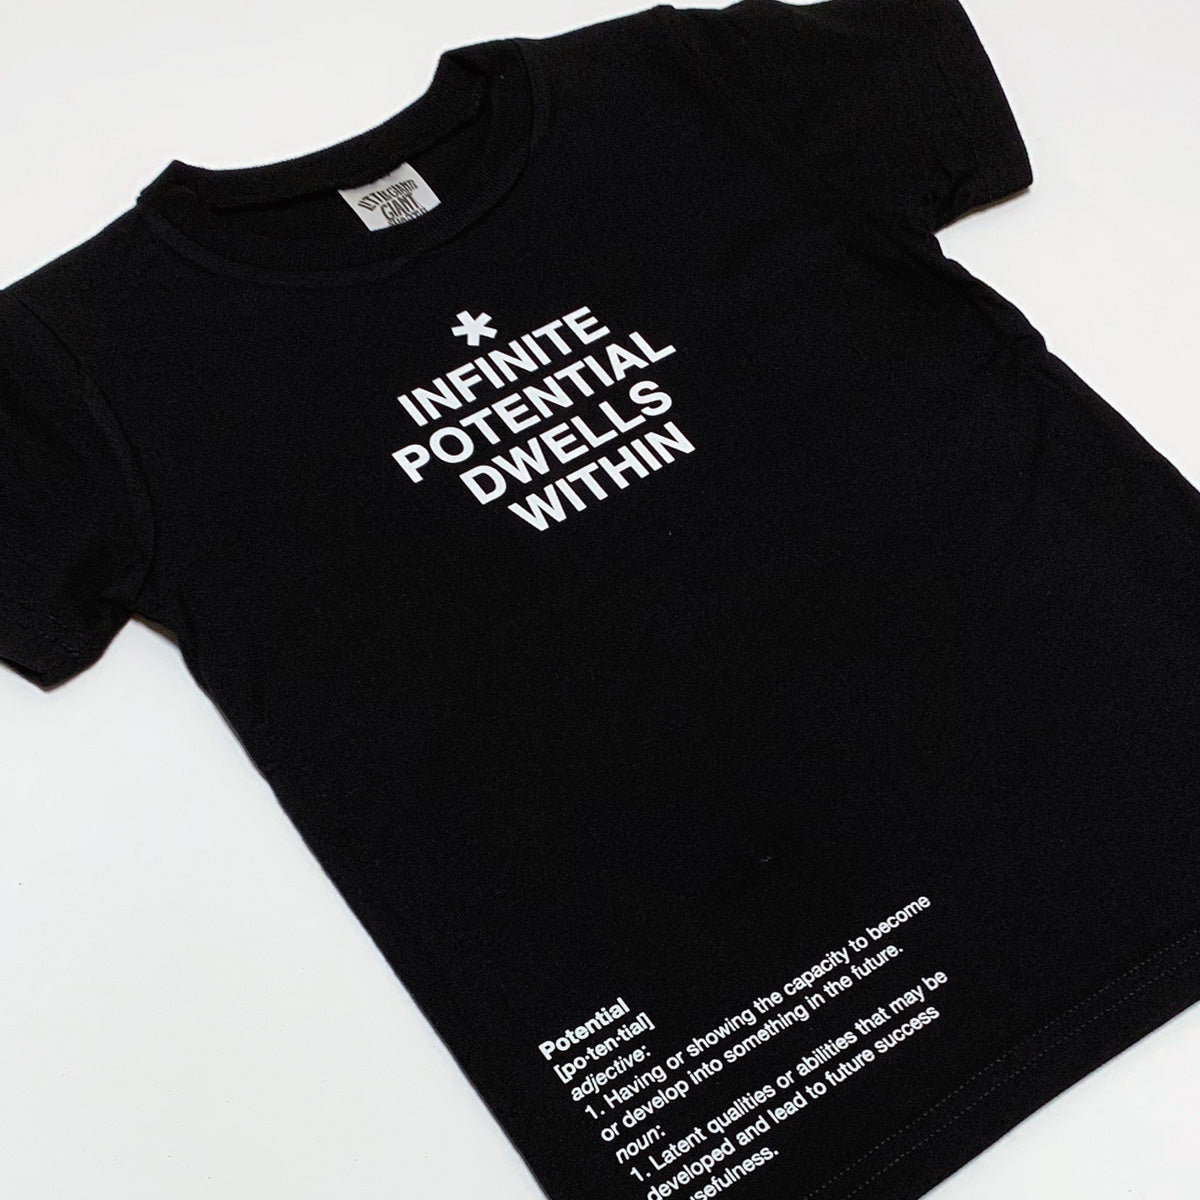 Infinite Potential T-Shirt (Black)